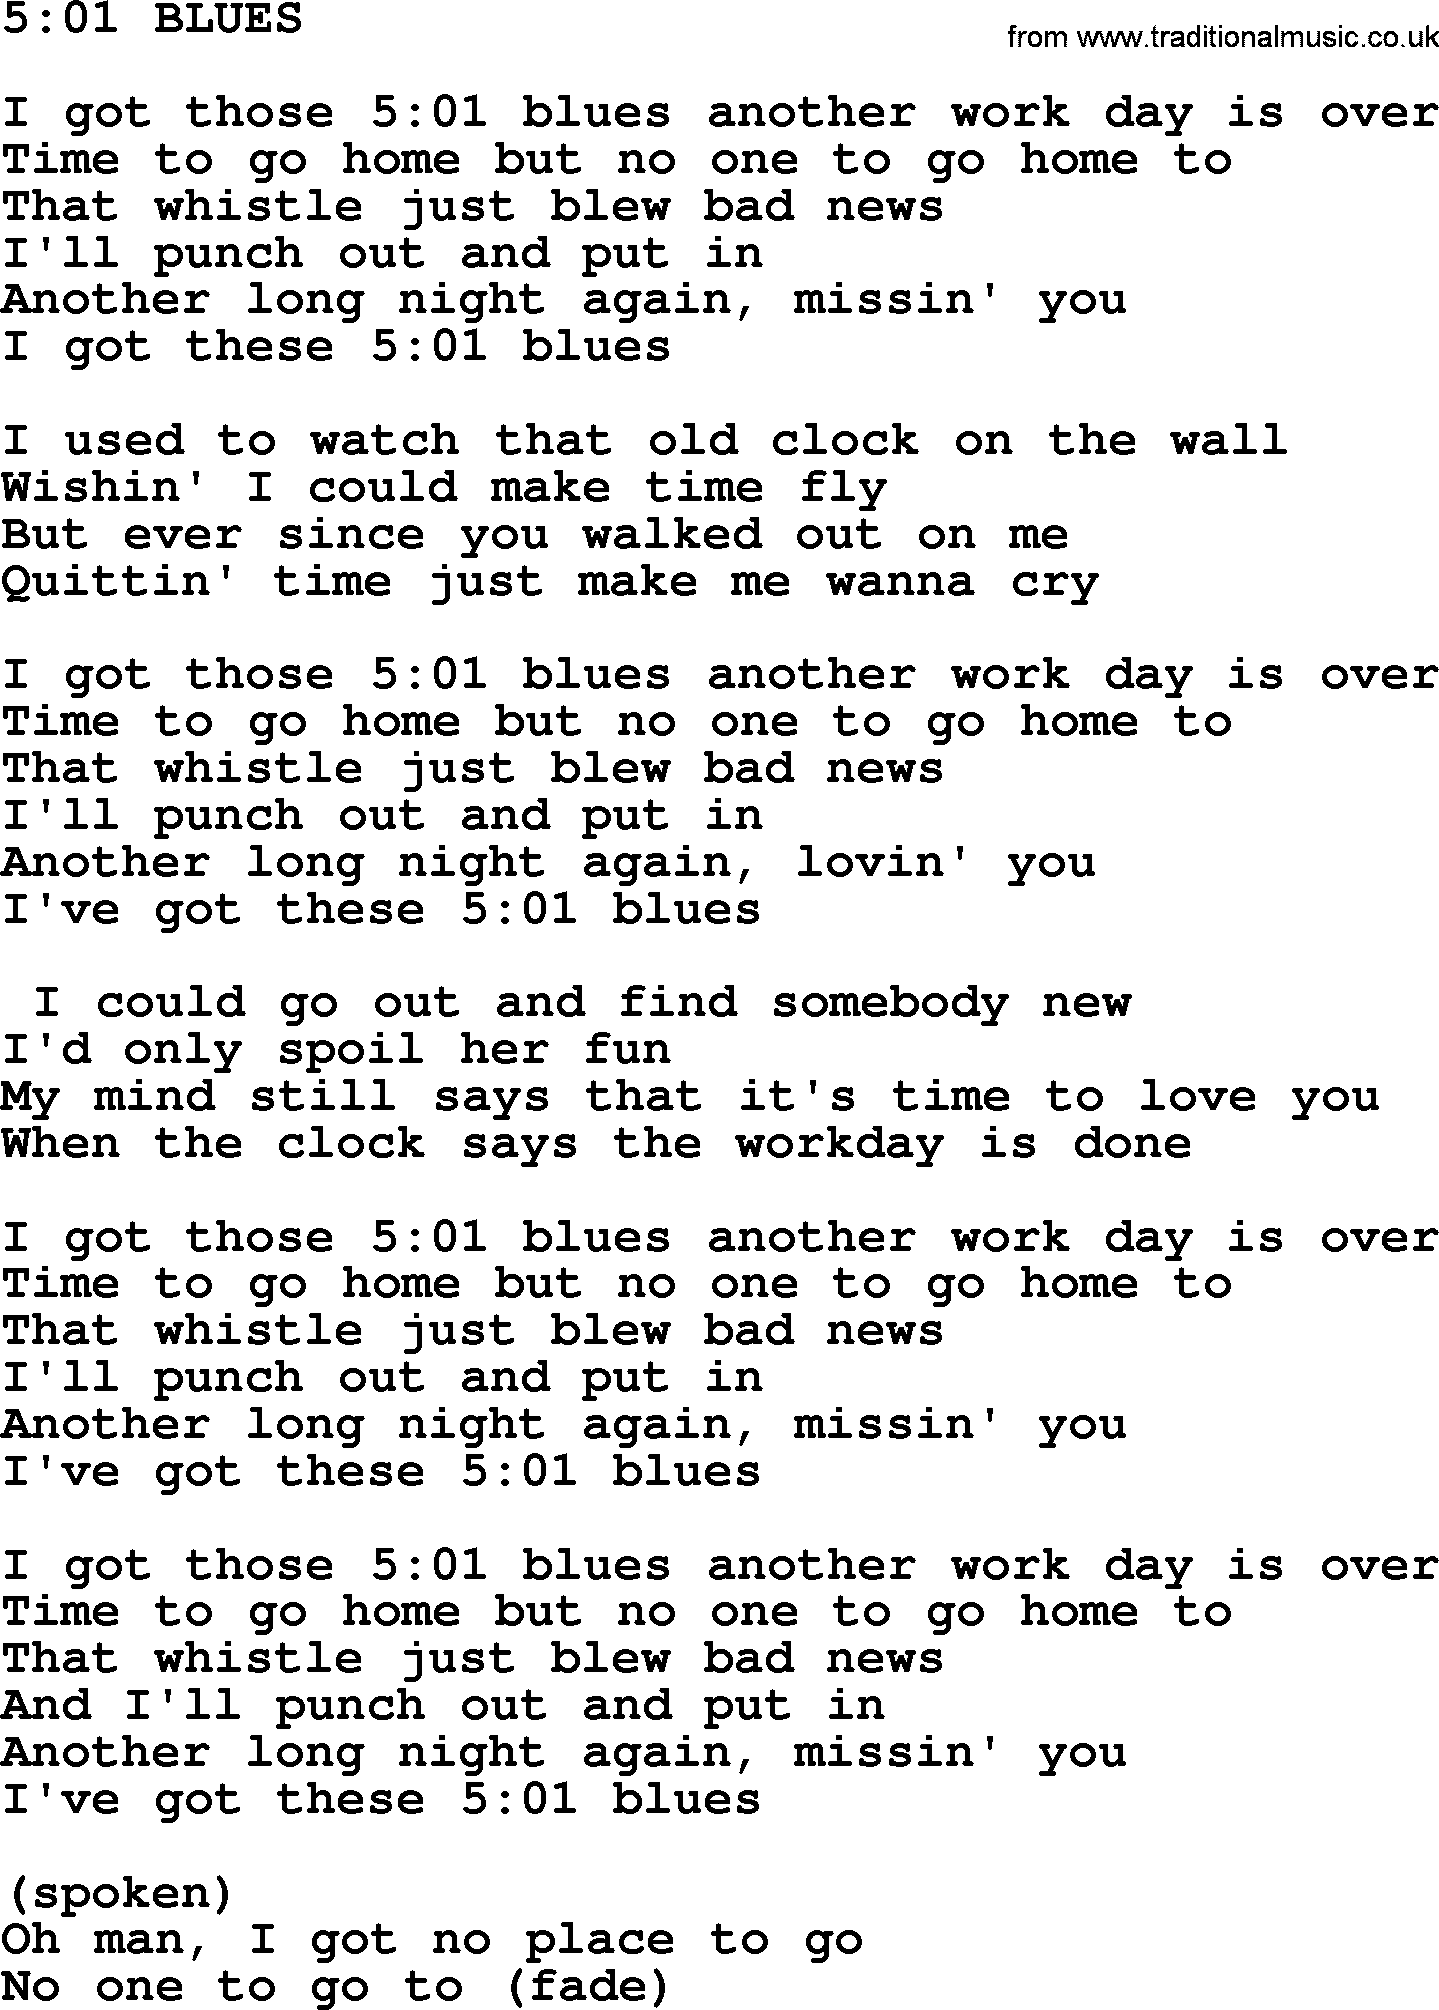 Merle Haggard song: 501 Blues, lyrics.